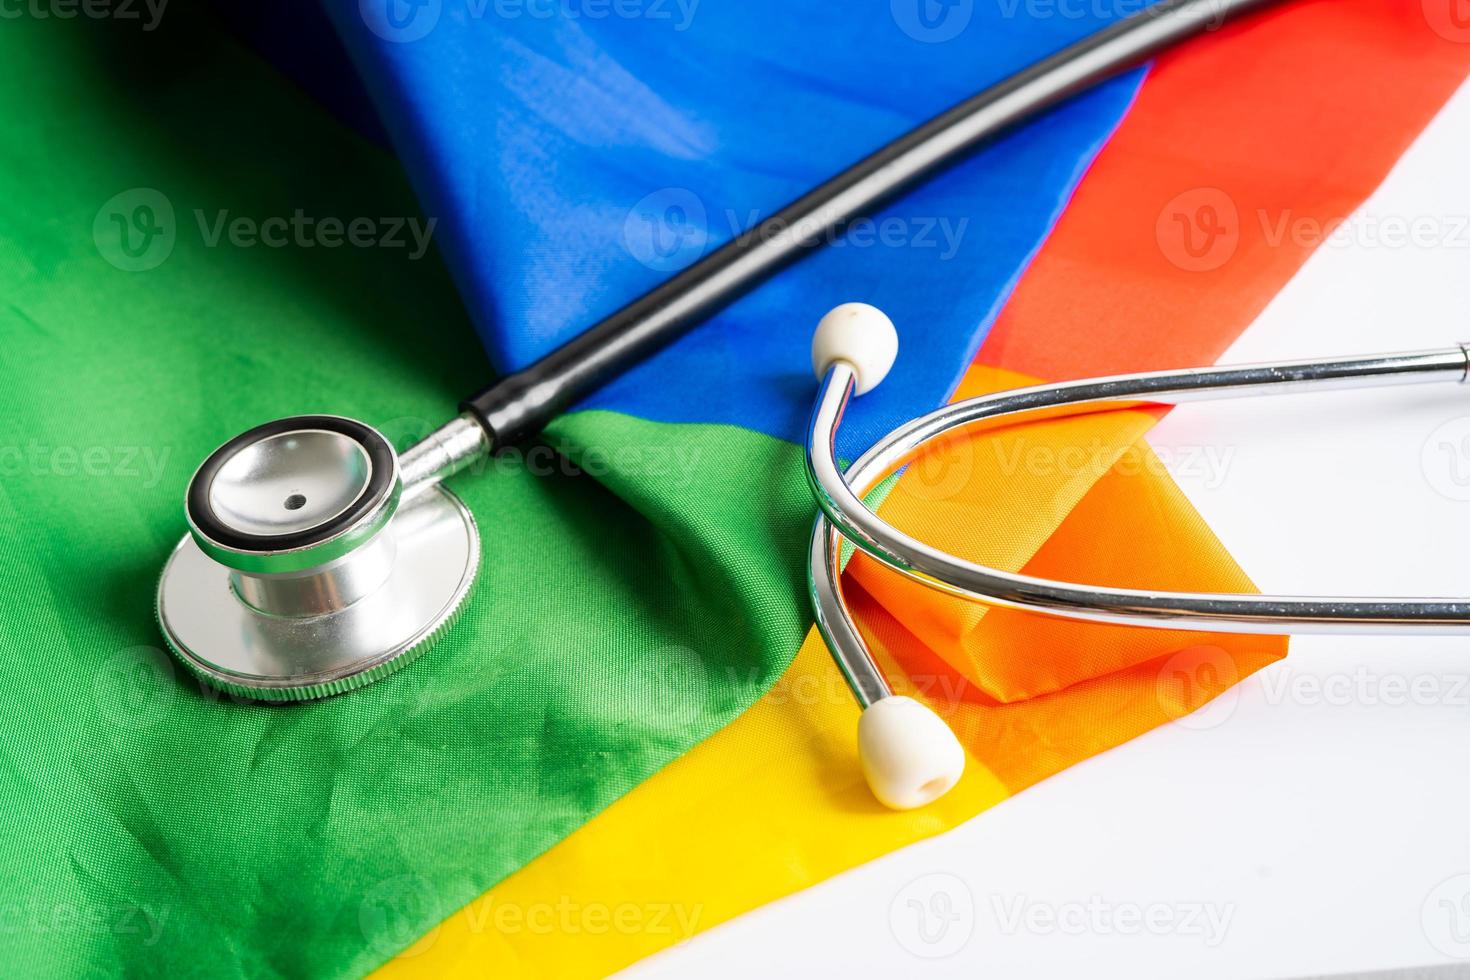 estetoscópio preto no fundo da bandeira do arco-íris, símbolo do mês do orgulho LGBT, comemorar anual em junho social, símbolo de gays, lésbicas, bissexuais, transgêneros, direitos humanos e paz. foto